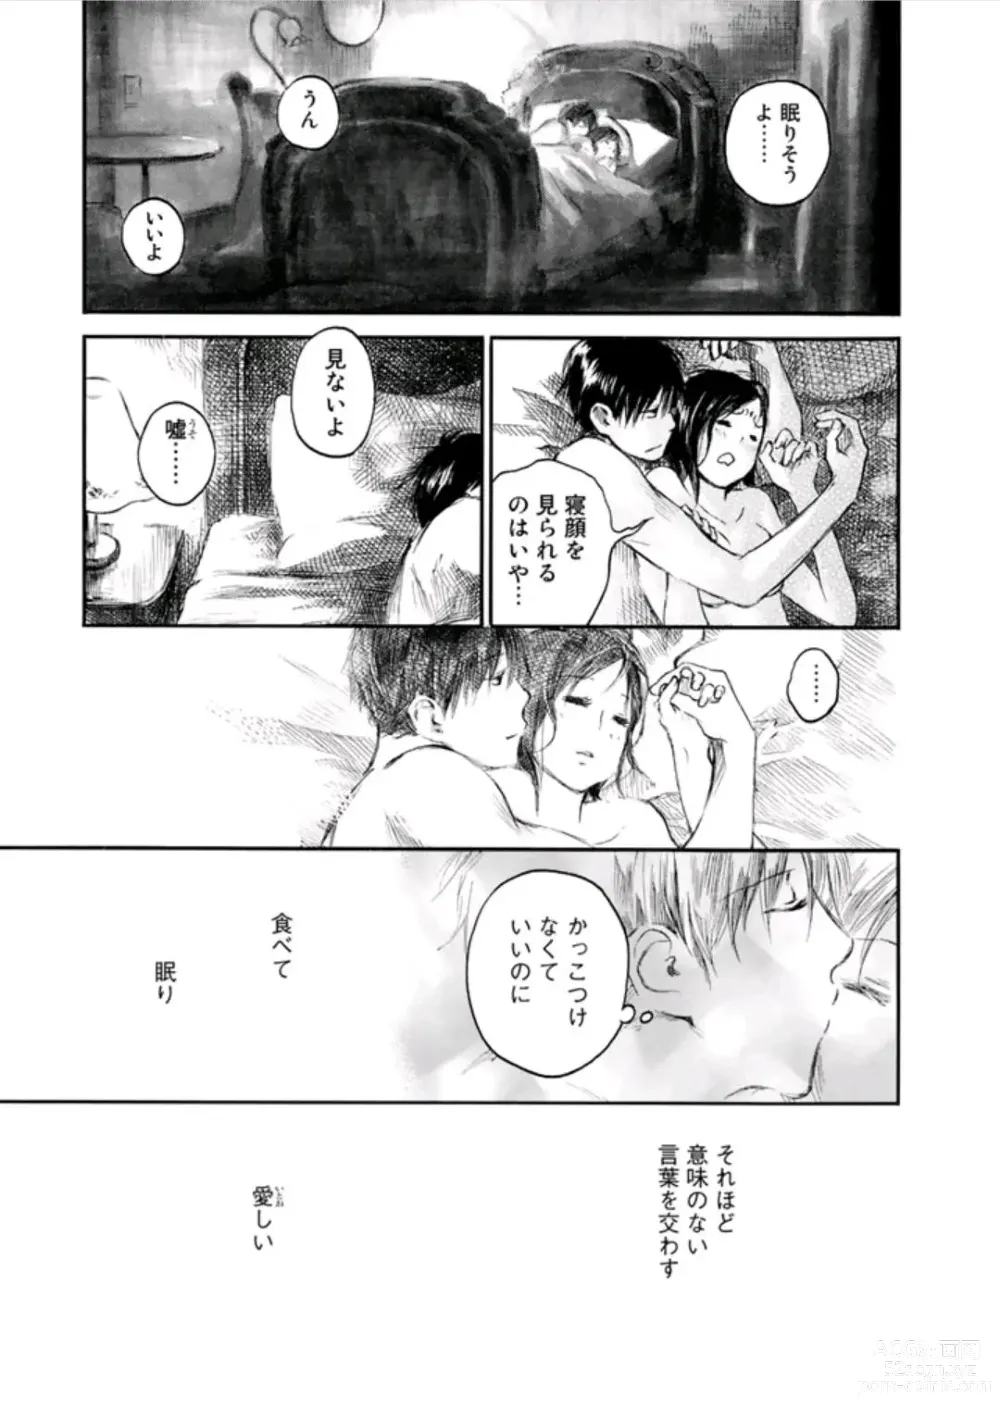 Page 71 of manga Natsu No Zenjitu